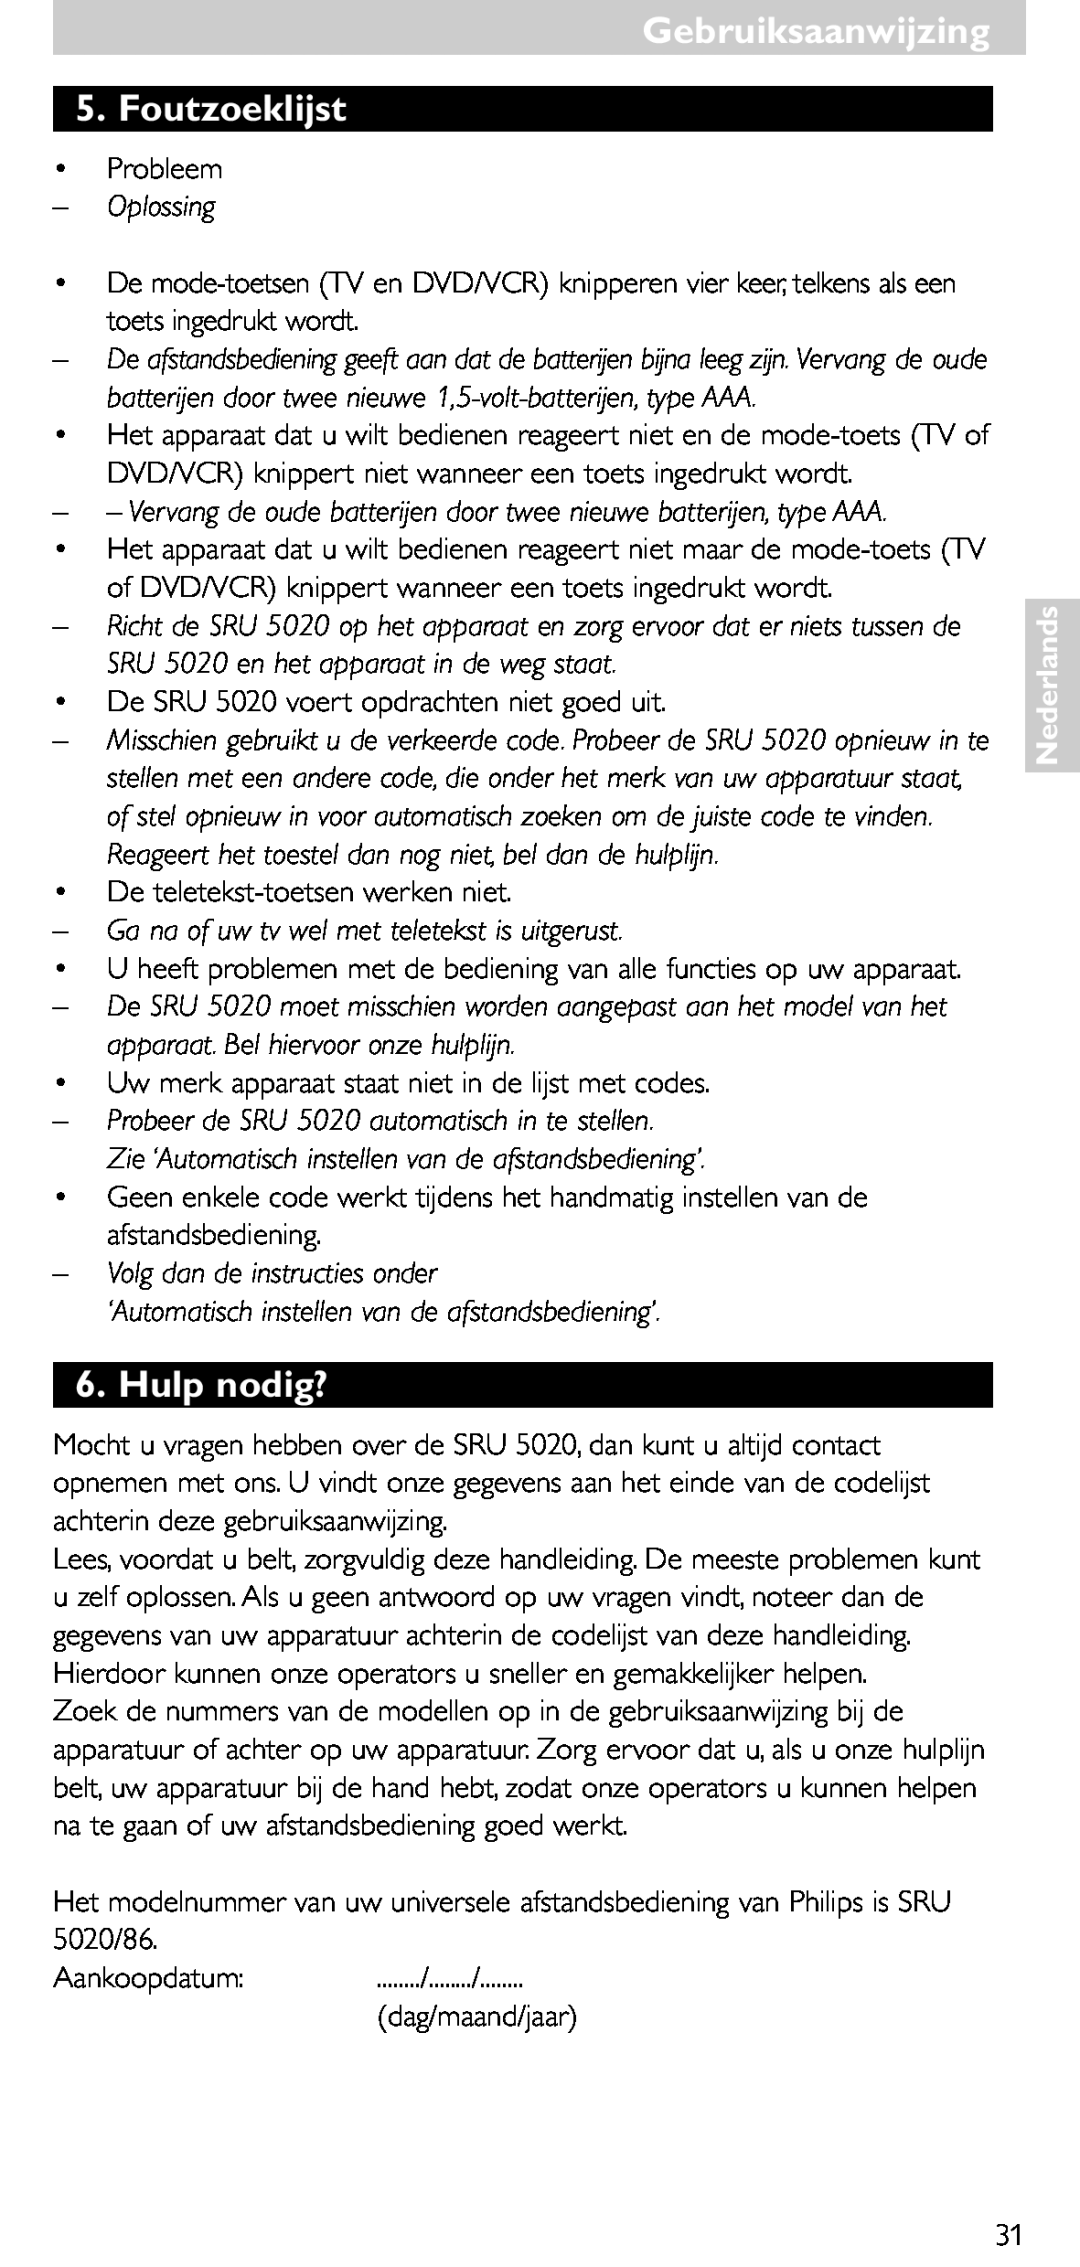 Philips SRU 5020/86 Gebruiksaanwijzing 5. Foutzoeklijst, Hulp nodig?, Oplossing, Volg dan de instructies onder, Nederlands 